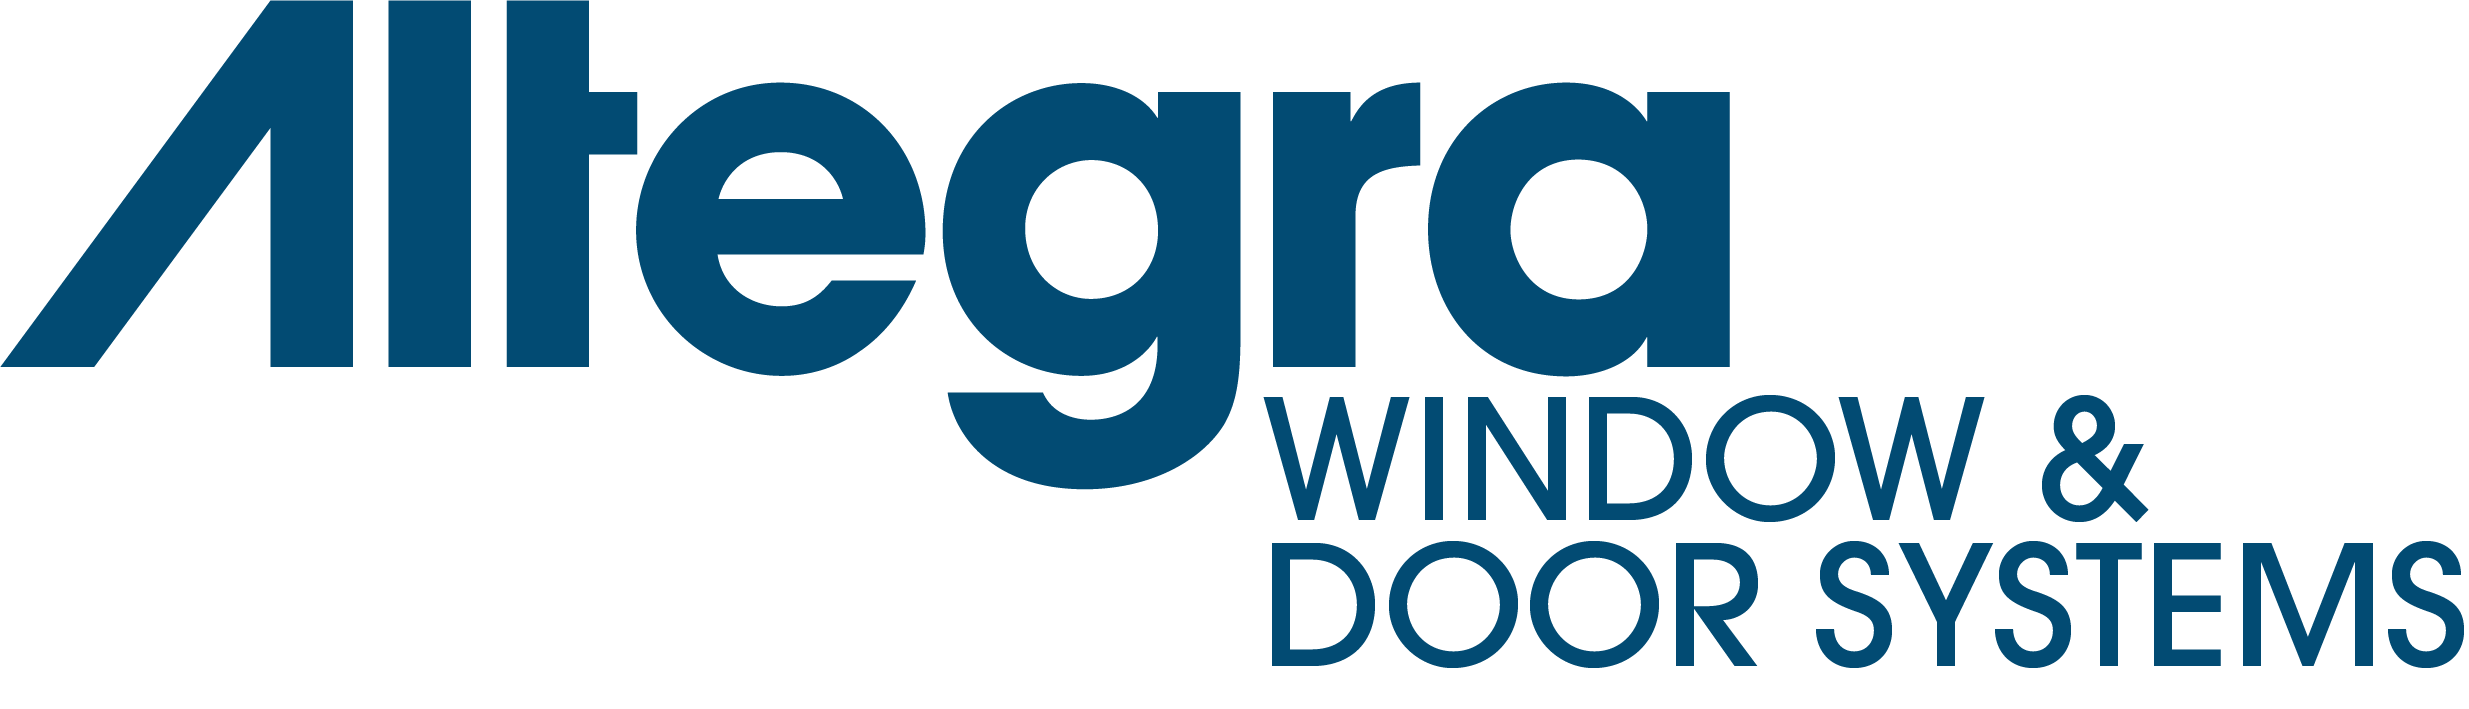 Altegra Window & Door Systems